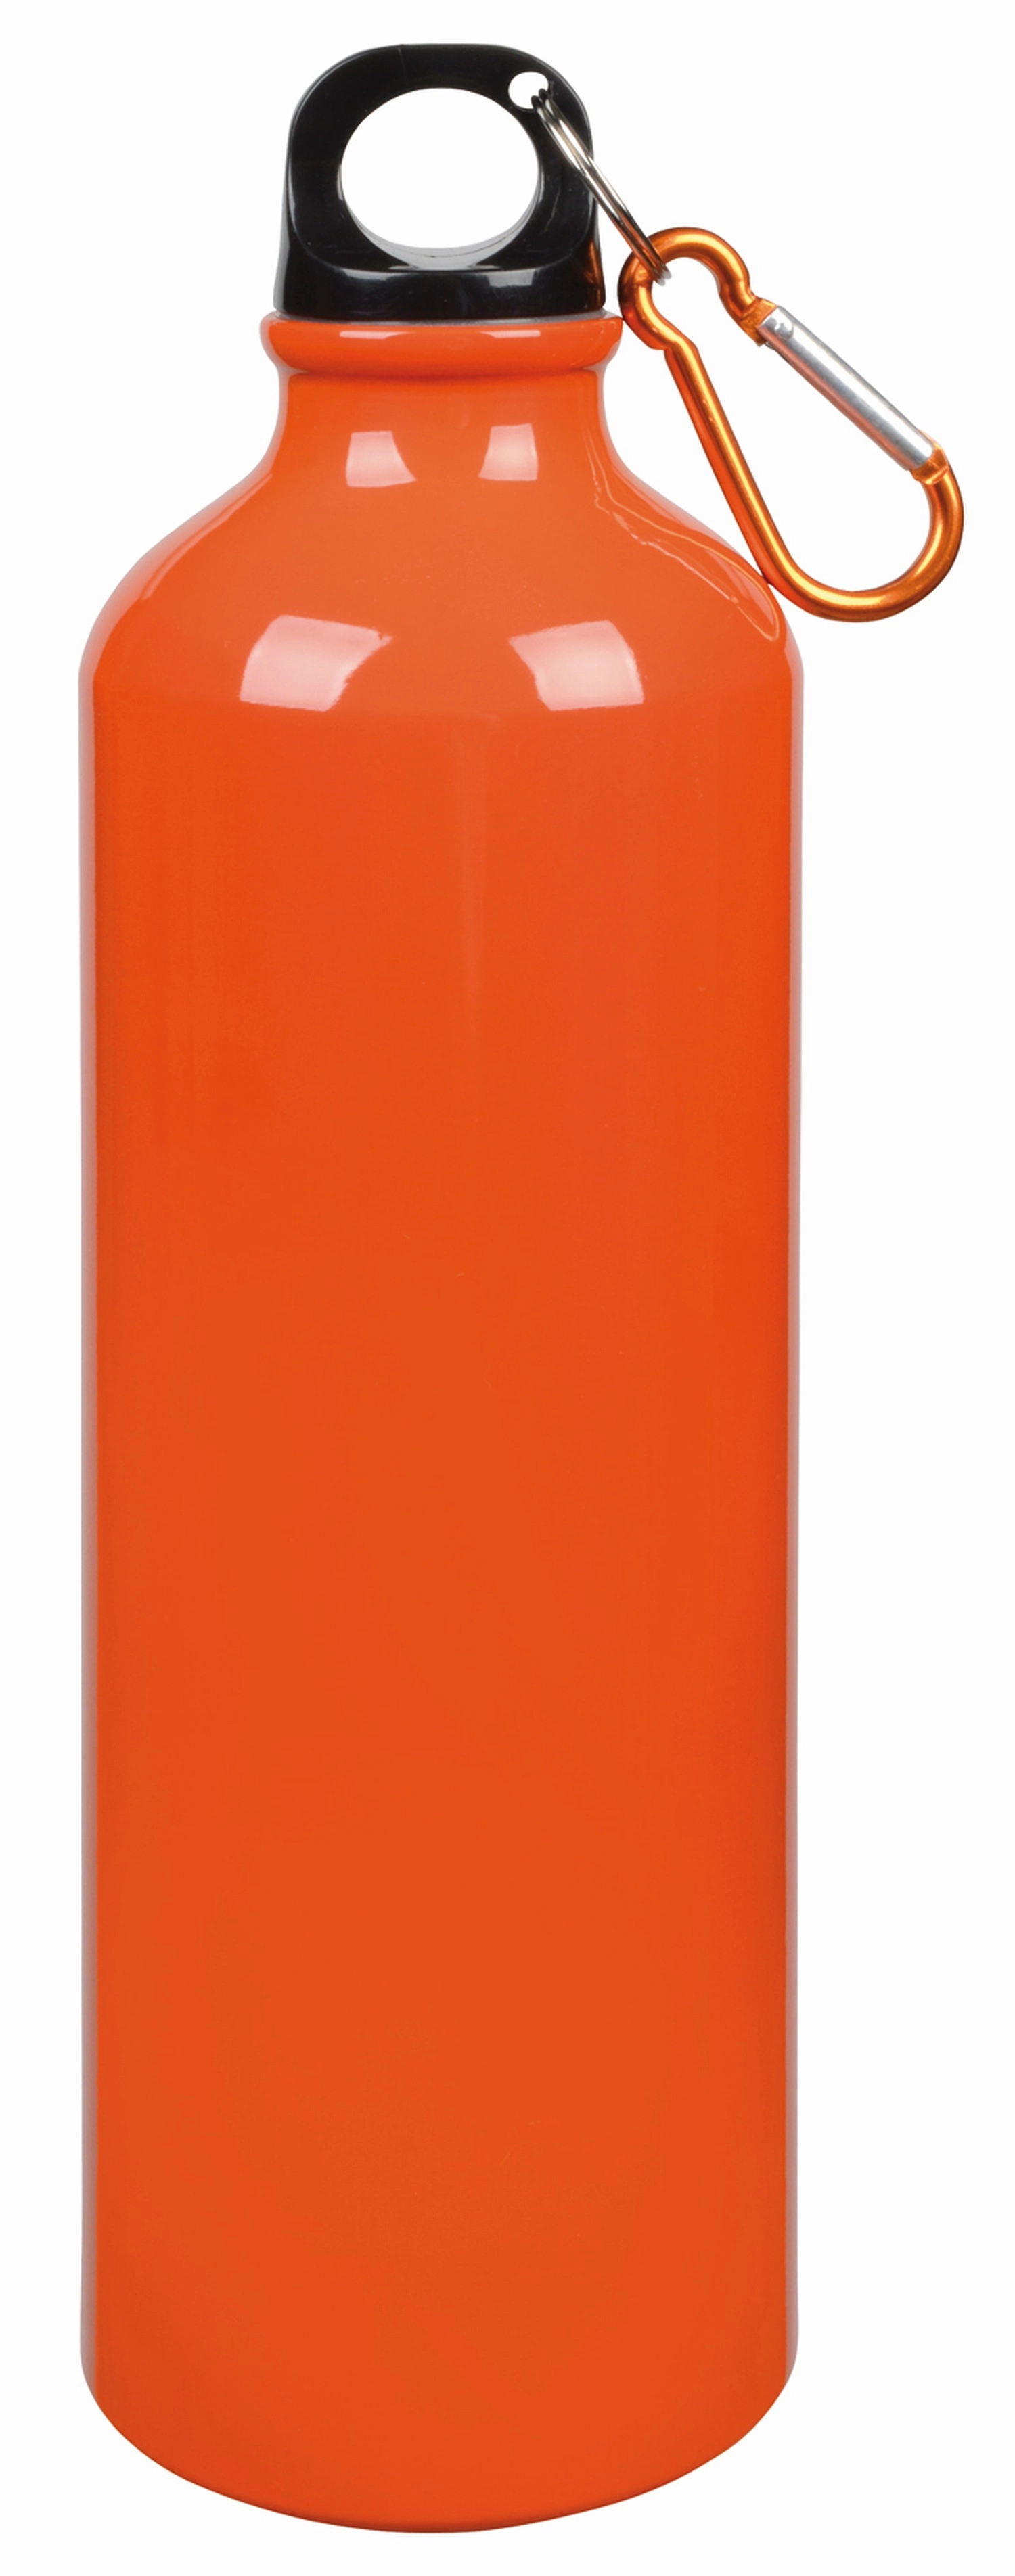 Aluminiowy bidon BIG TRANSIT, pomarańczowy 56-0603136 pomarańczowy